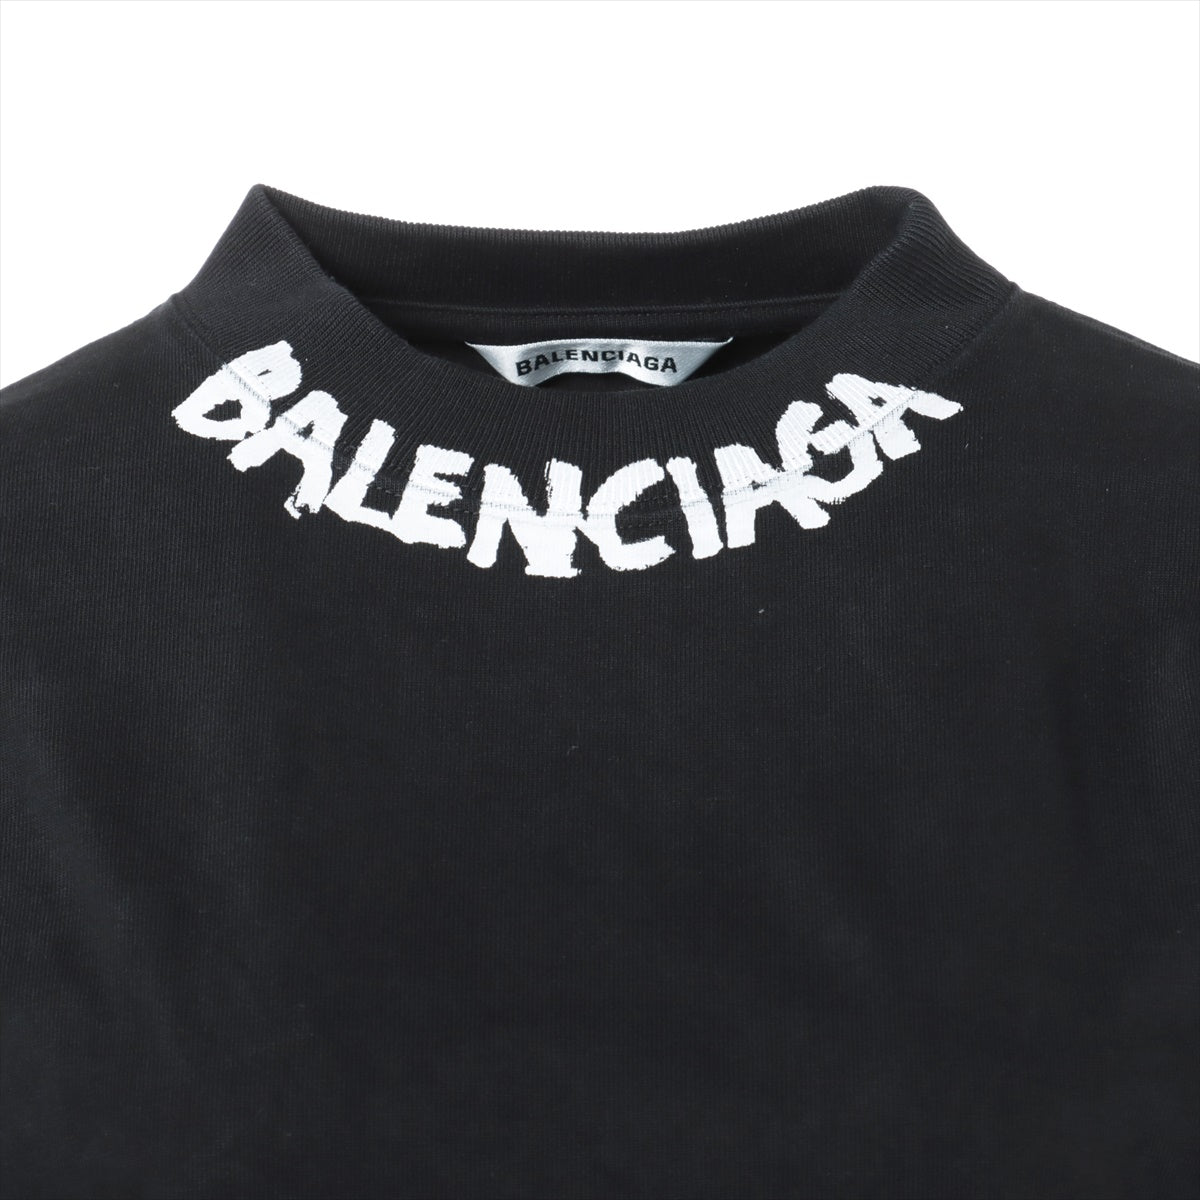 バレンシアガ 20年 コットン ロングTシャツ XS レディース ブラック  646222 ネックプリント